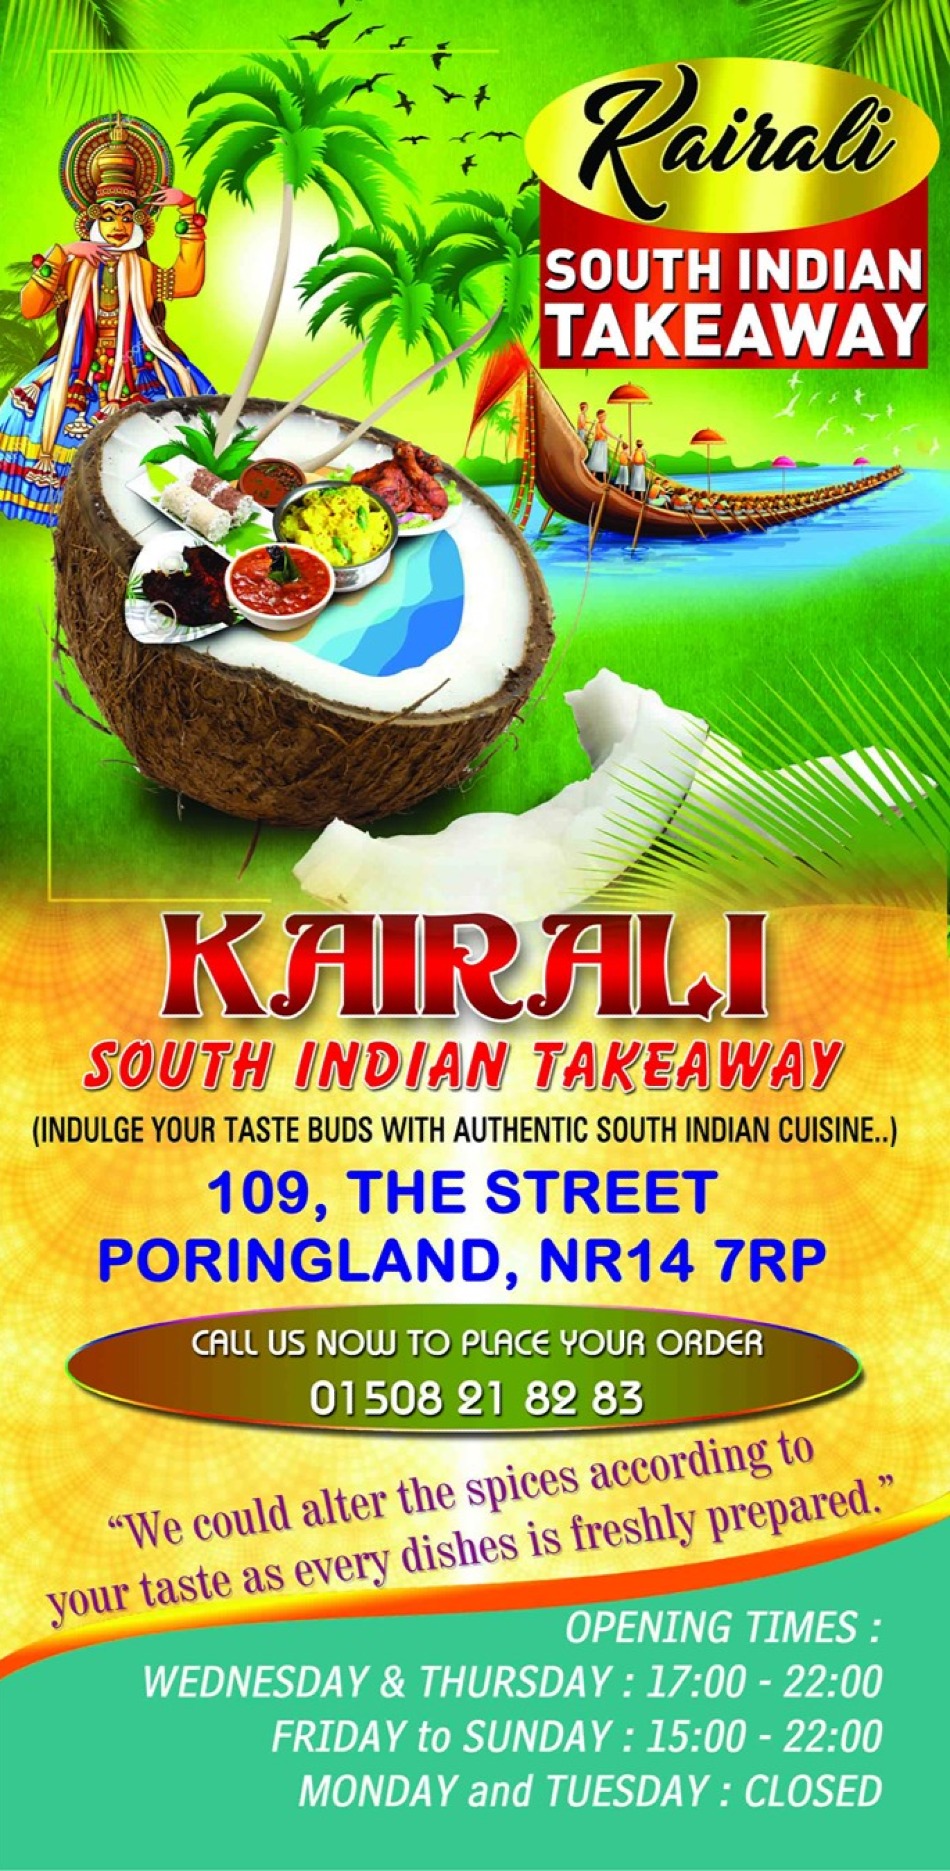 Takeaway Restaurant Menu Page - Kairali South Indian Takeaway - Norwich